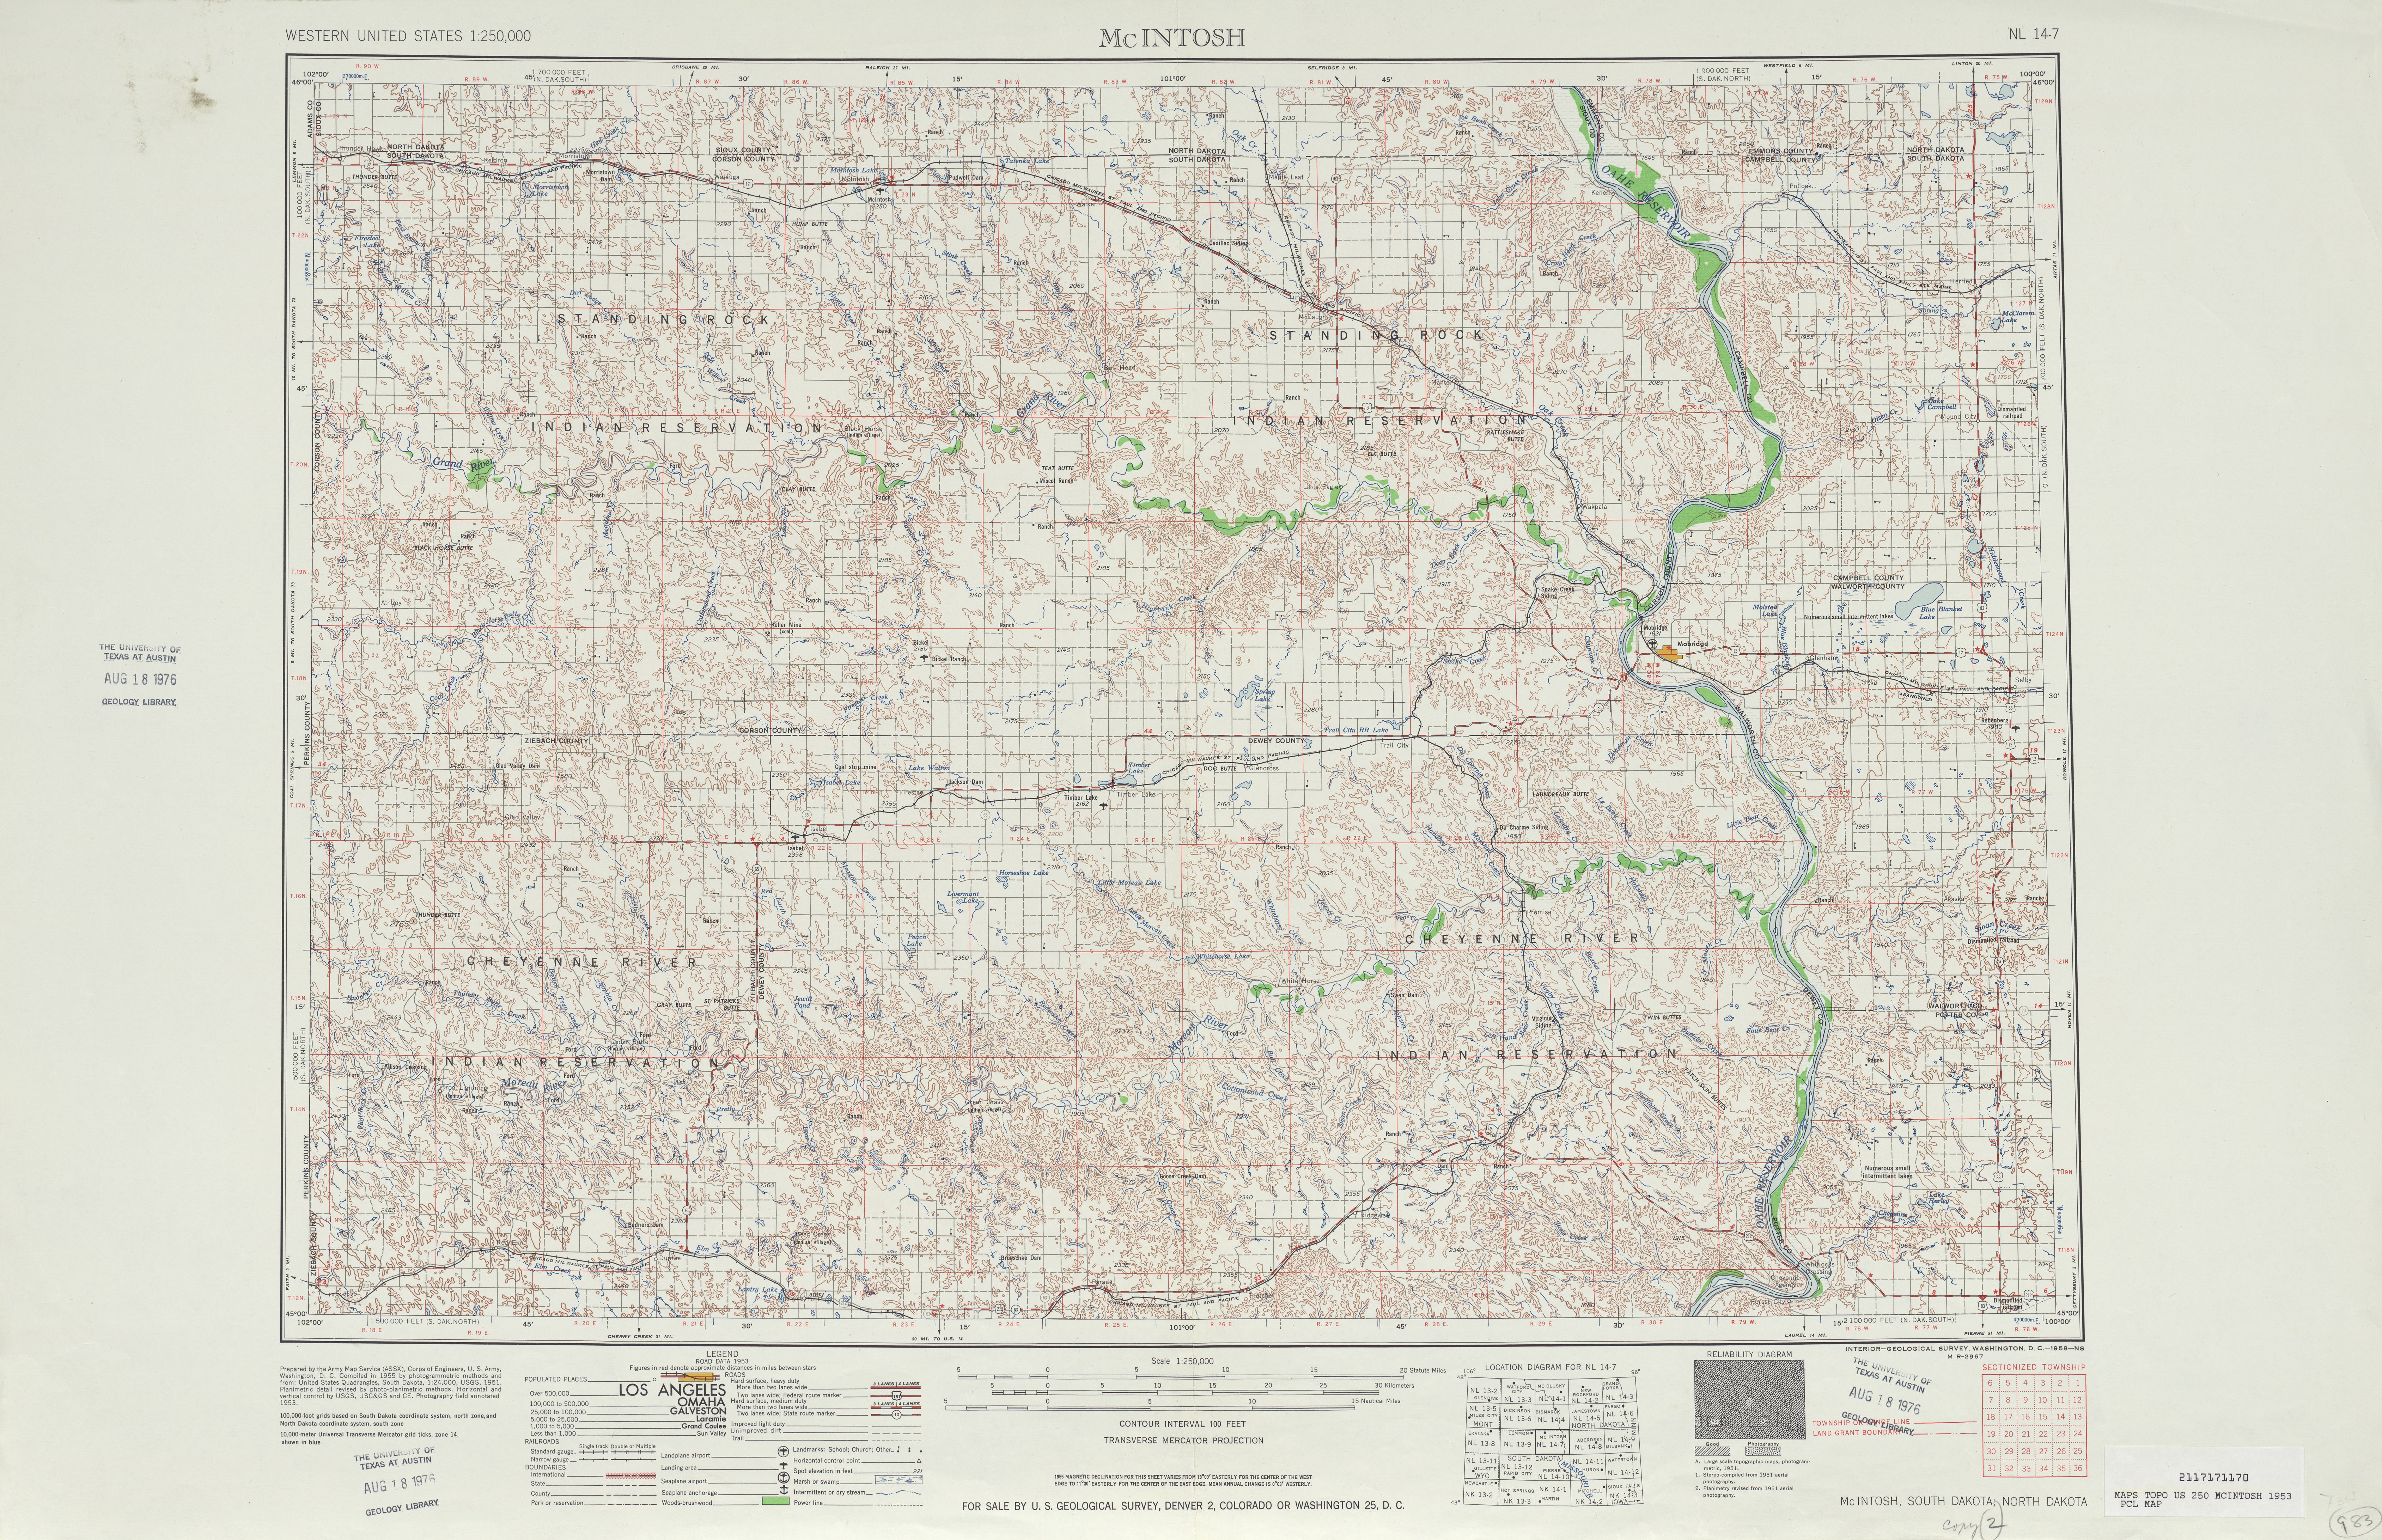 Hoja Mcintosh del Mapa Topográfico de los Estados Unidos 1953